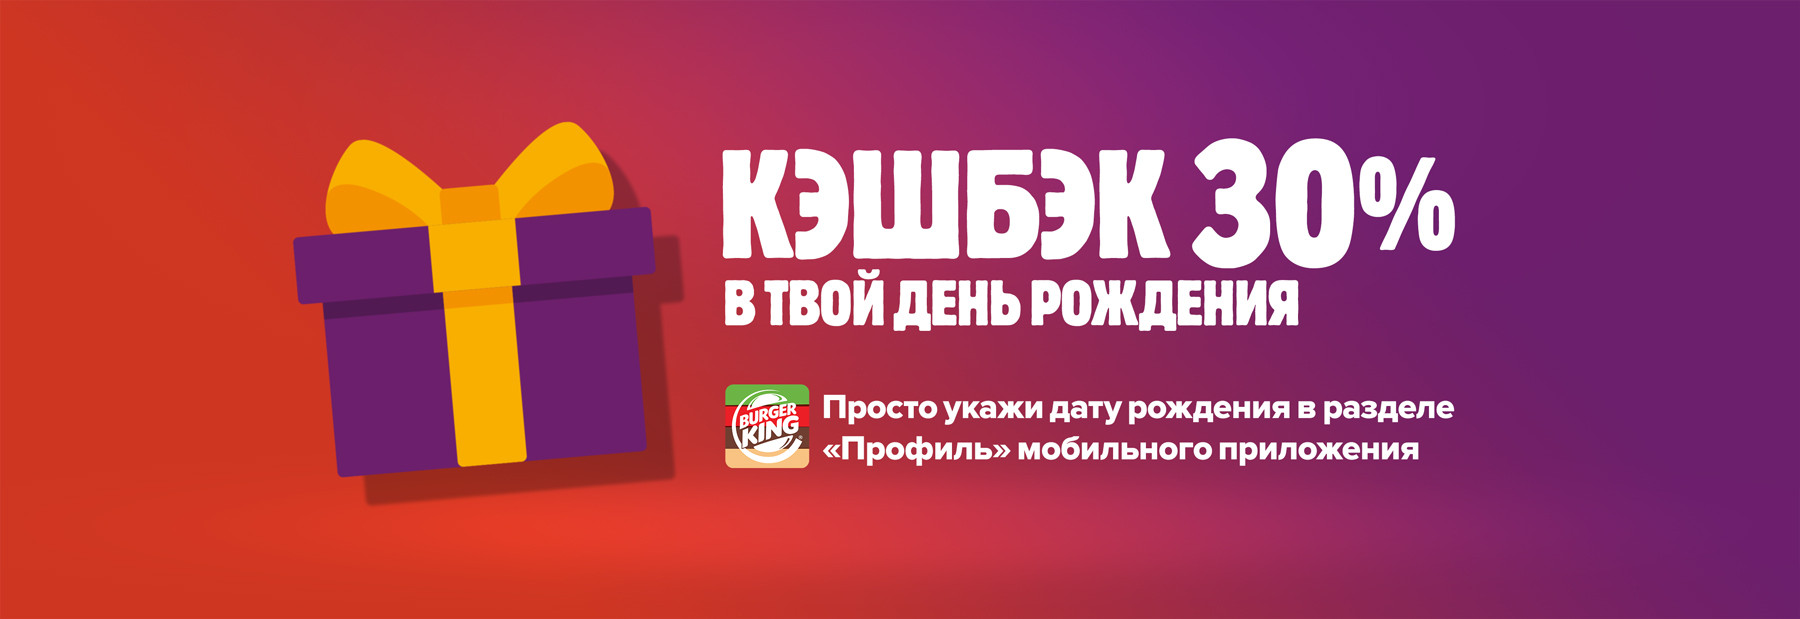 Рекламная акция Бургер Кинг «Кэшбэк 30% в День рождения»